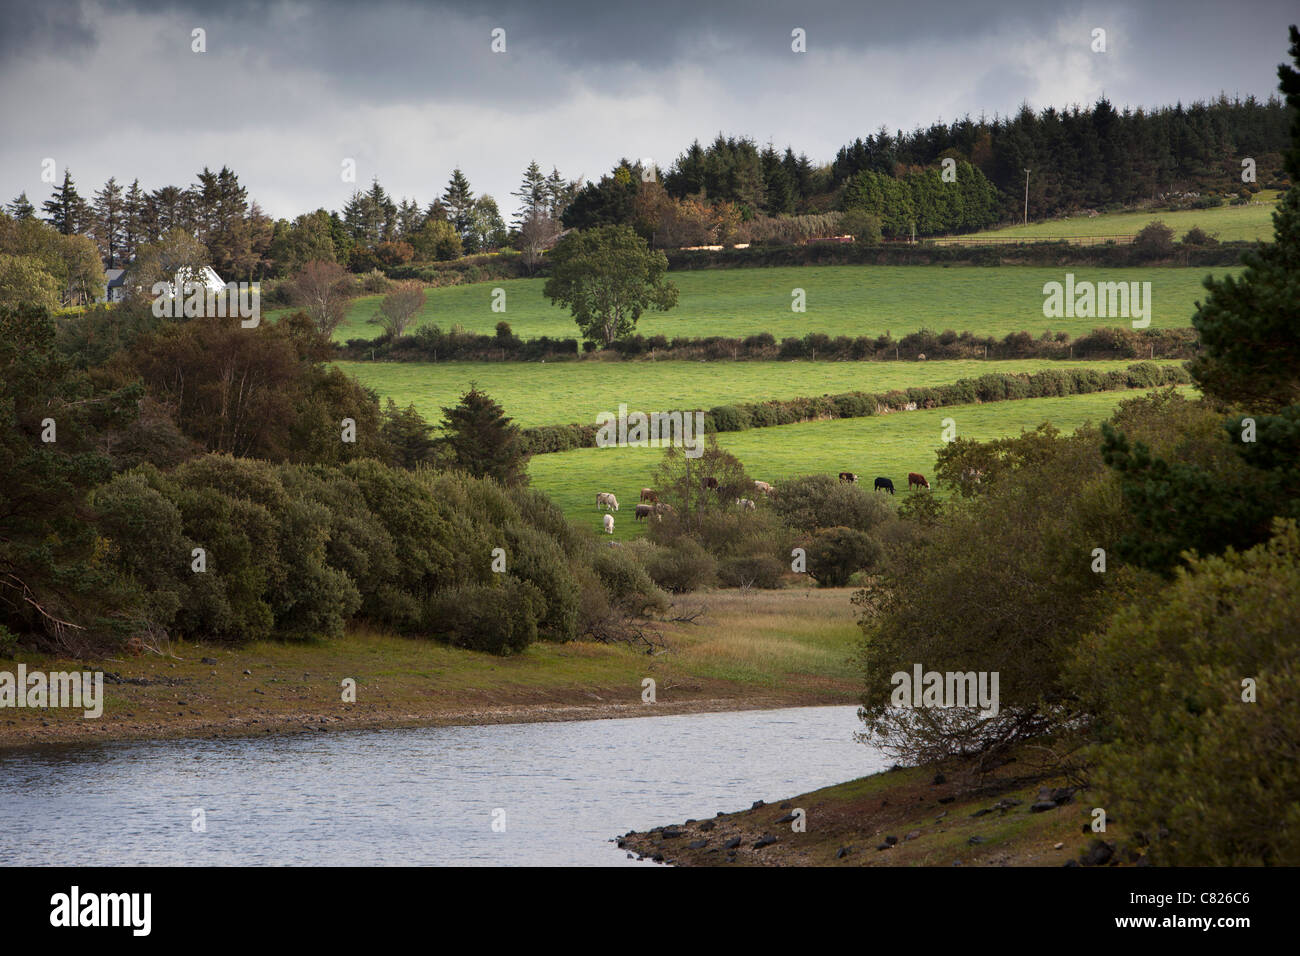 Irland, Co. Wicklow, Rundholz, Bauernhof am Ufer des Stausees Vartry, Dublins Wasserversorgung Stockfoto